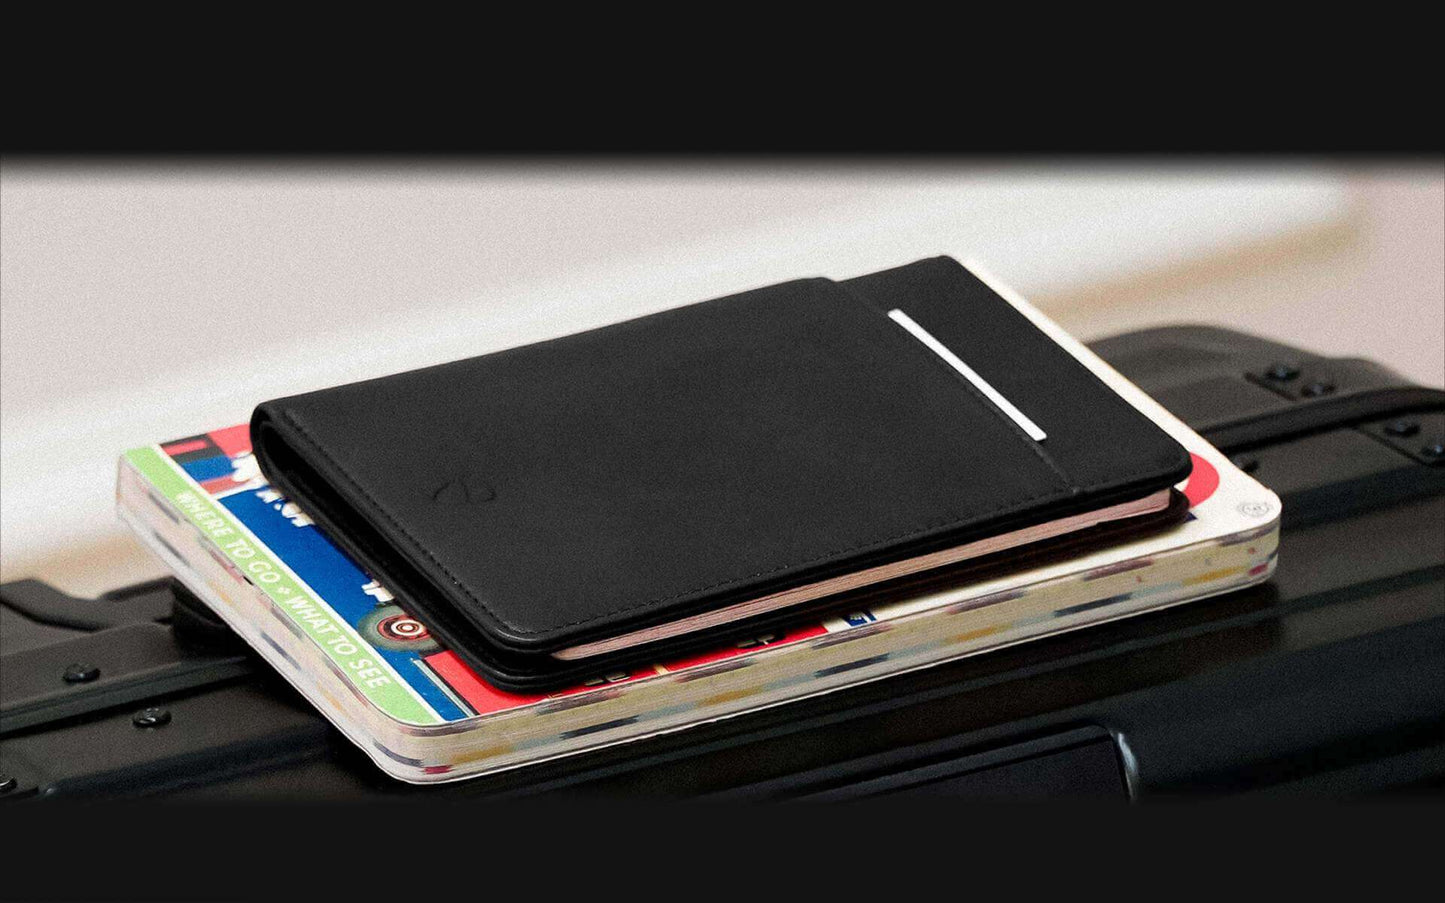 RFID blocking Kensington passport wallet